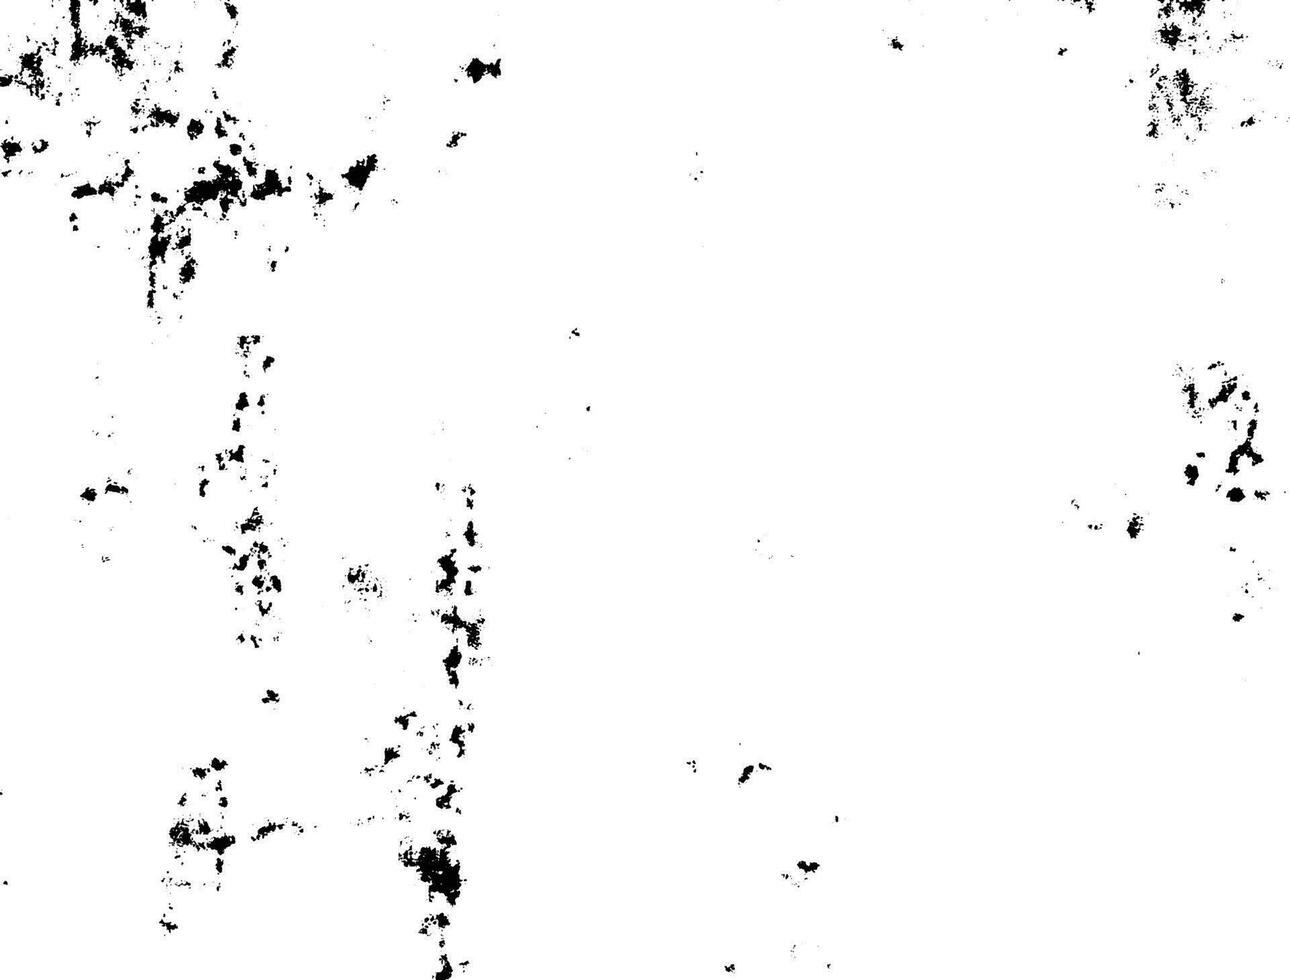 Preto e branco grunge urbano textura vetor com cópia de espaço. abstrato ilustração superfície poeira e rude sujo parede fundo com esvaziar modelo. angústia ou sujeira e grunge efeito conceito - vetor